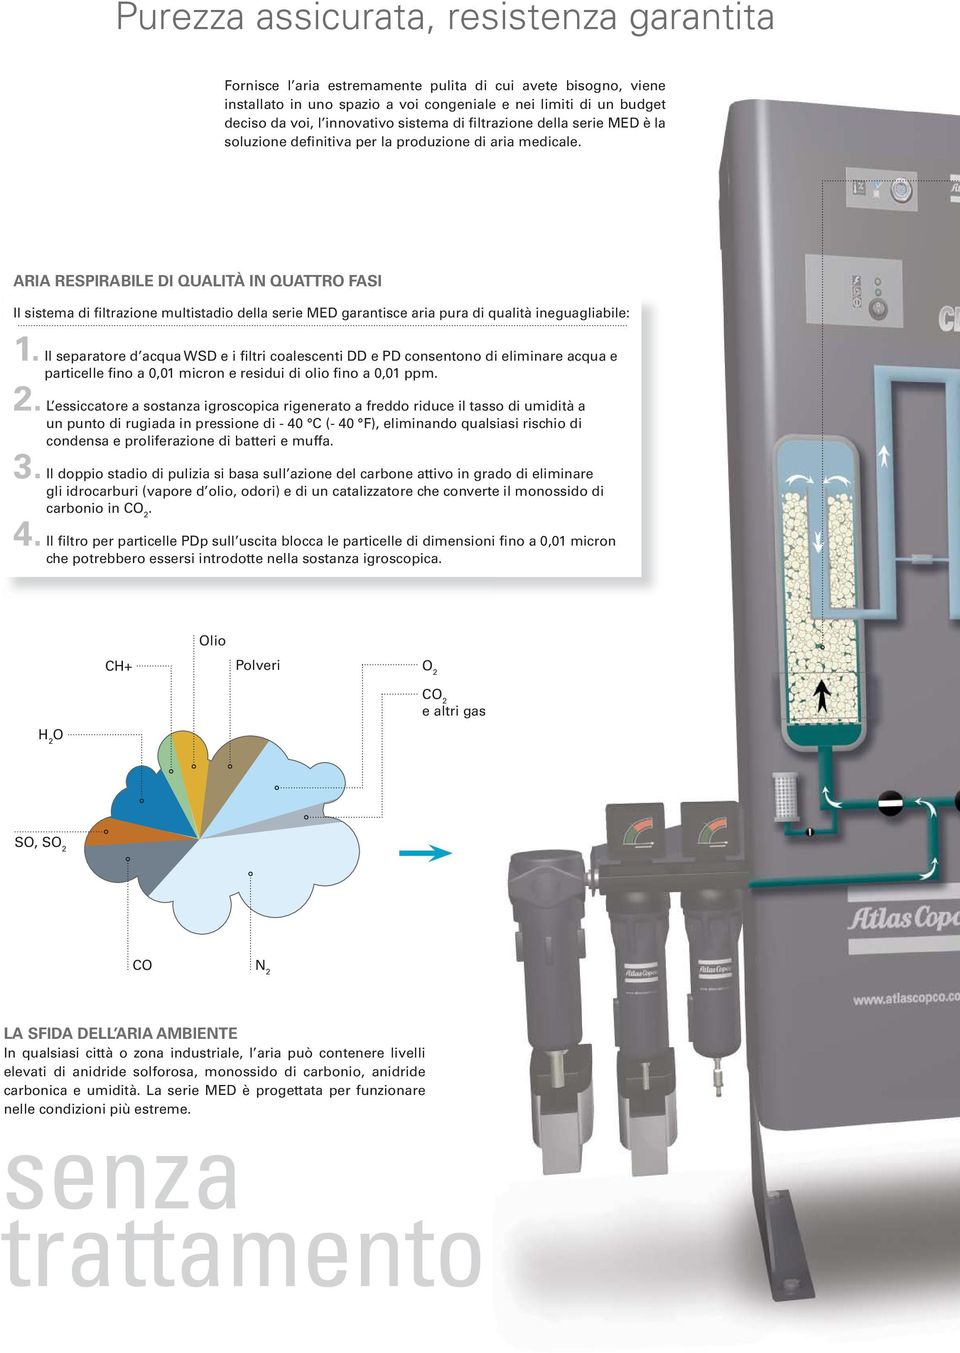 ARIA RESPIRABILE DI QUALITÀ IN QUATTR FASI Il sistema di filtrazione multistadio della serie MED garantisce aria pura di qualità ineguagliabile: 1.